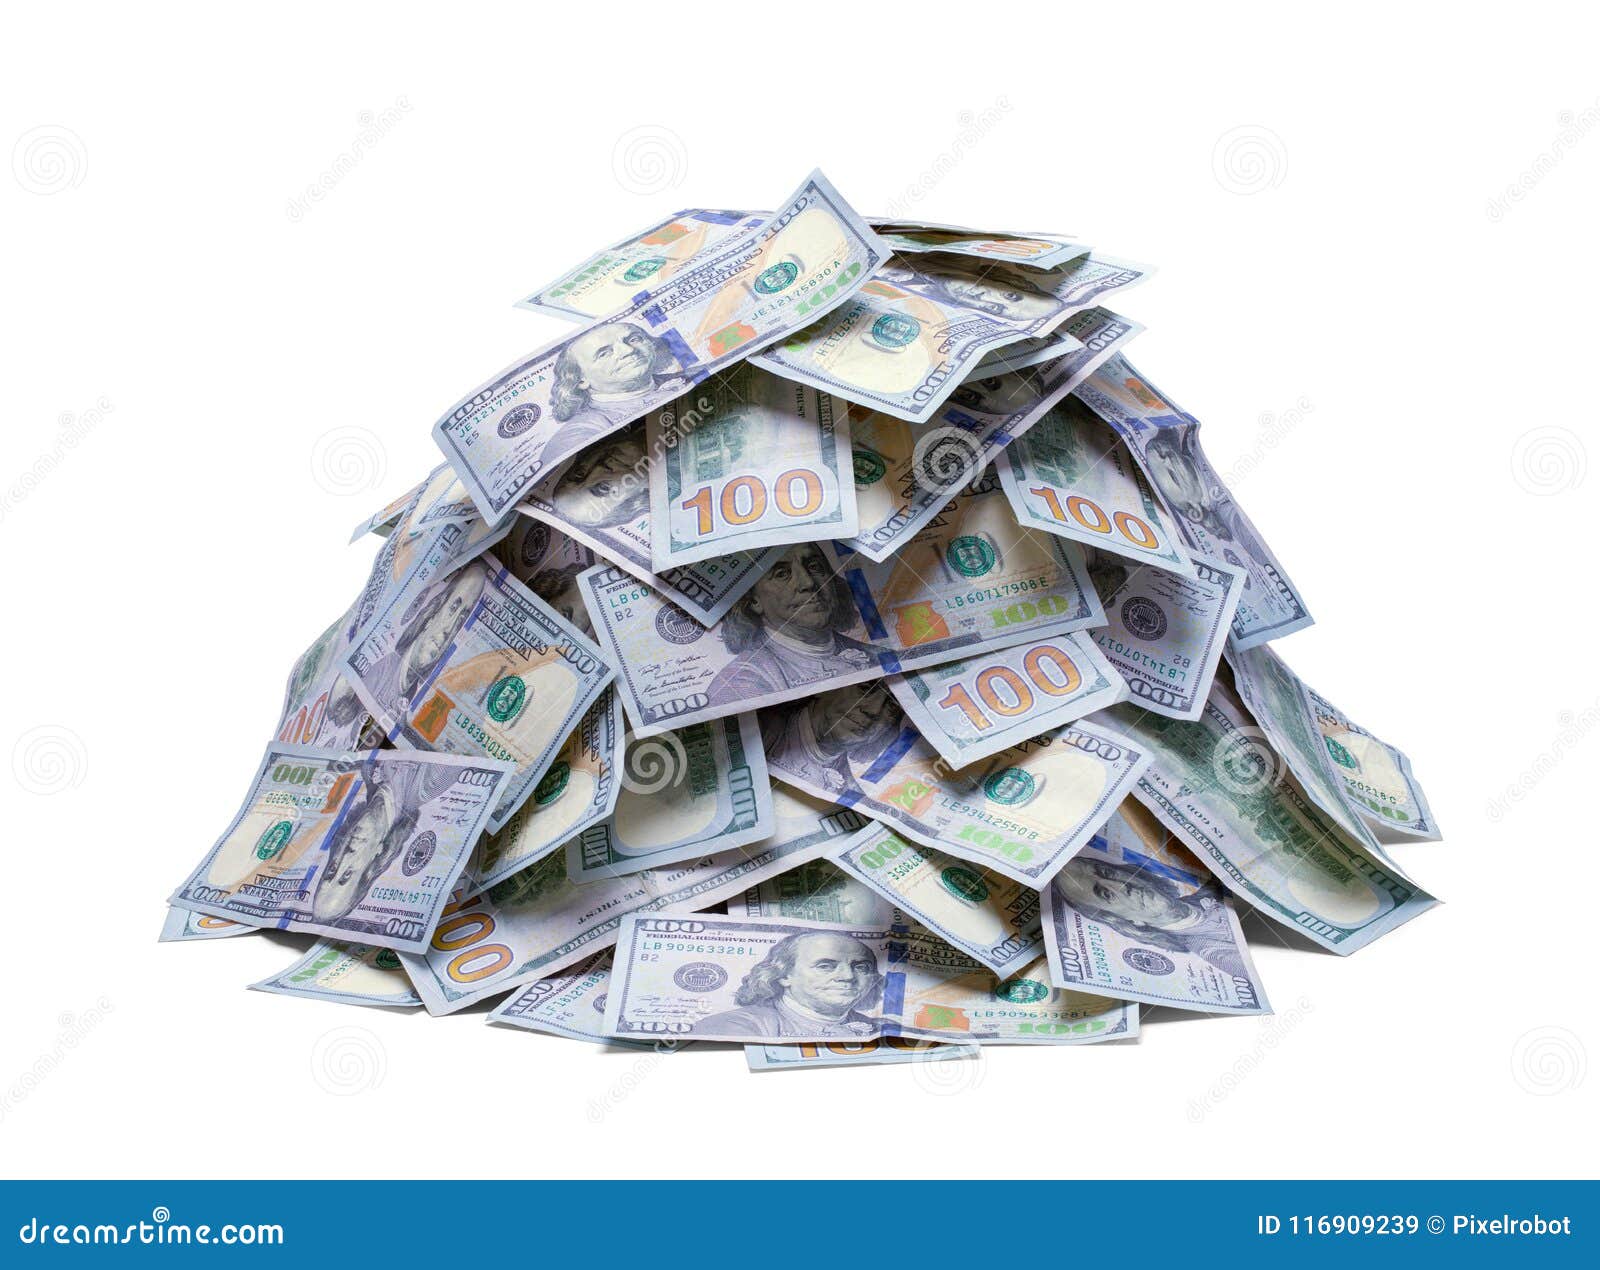 pile of new hundred dollar bills